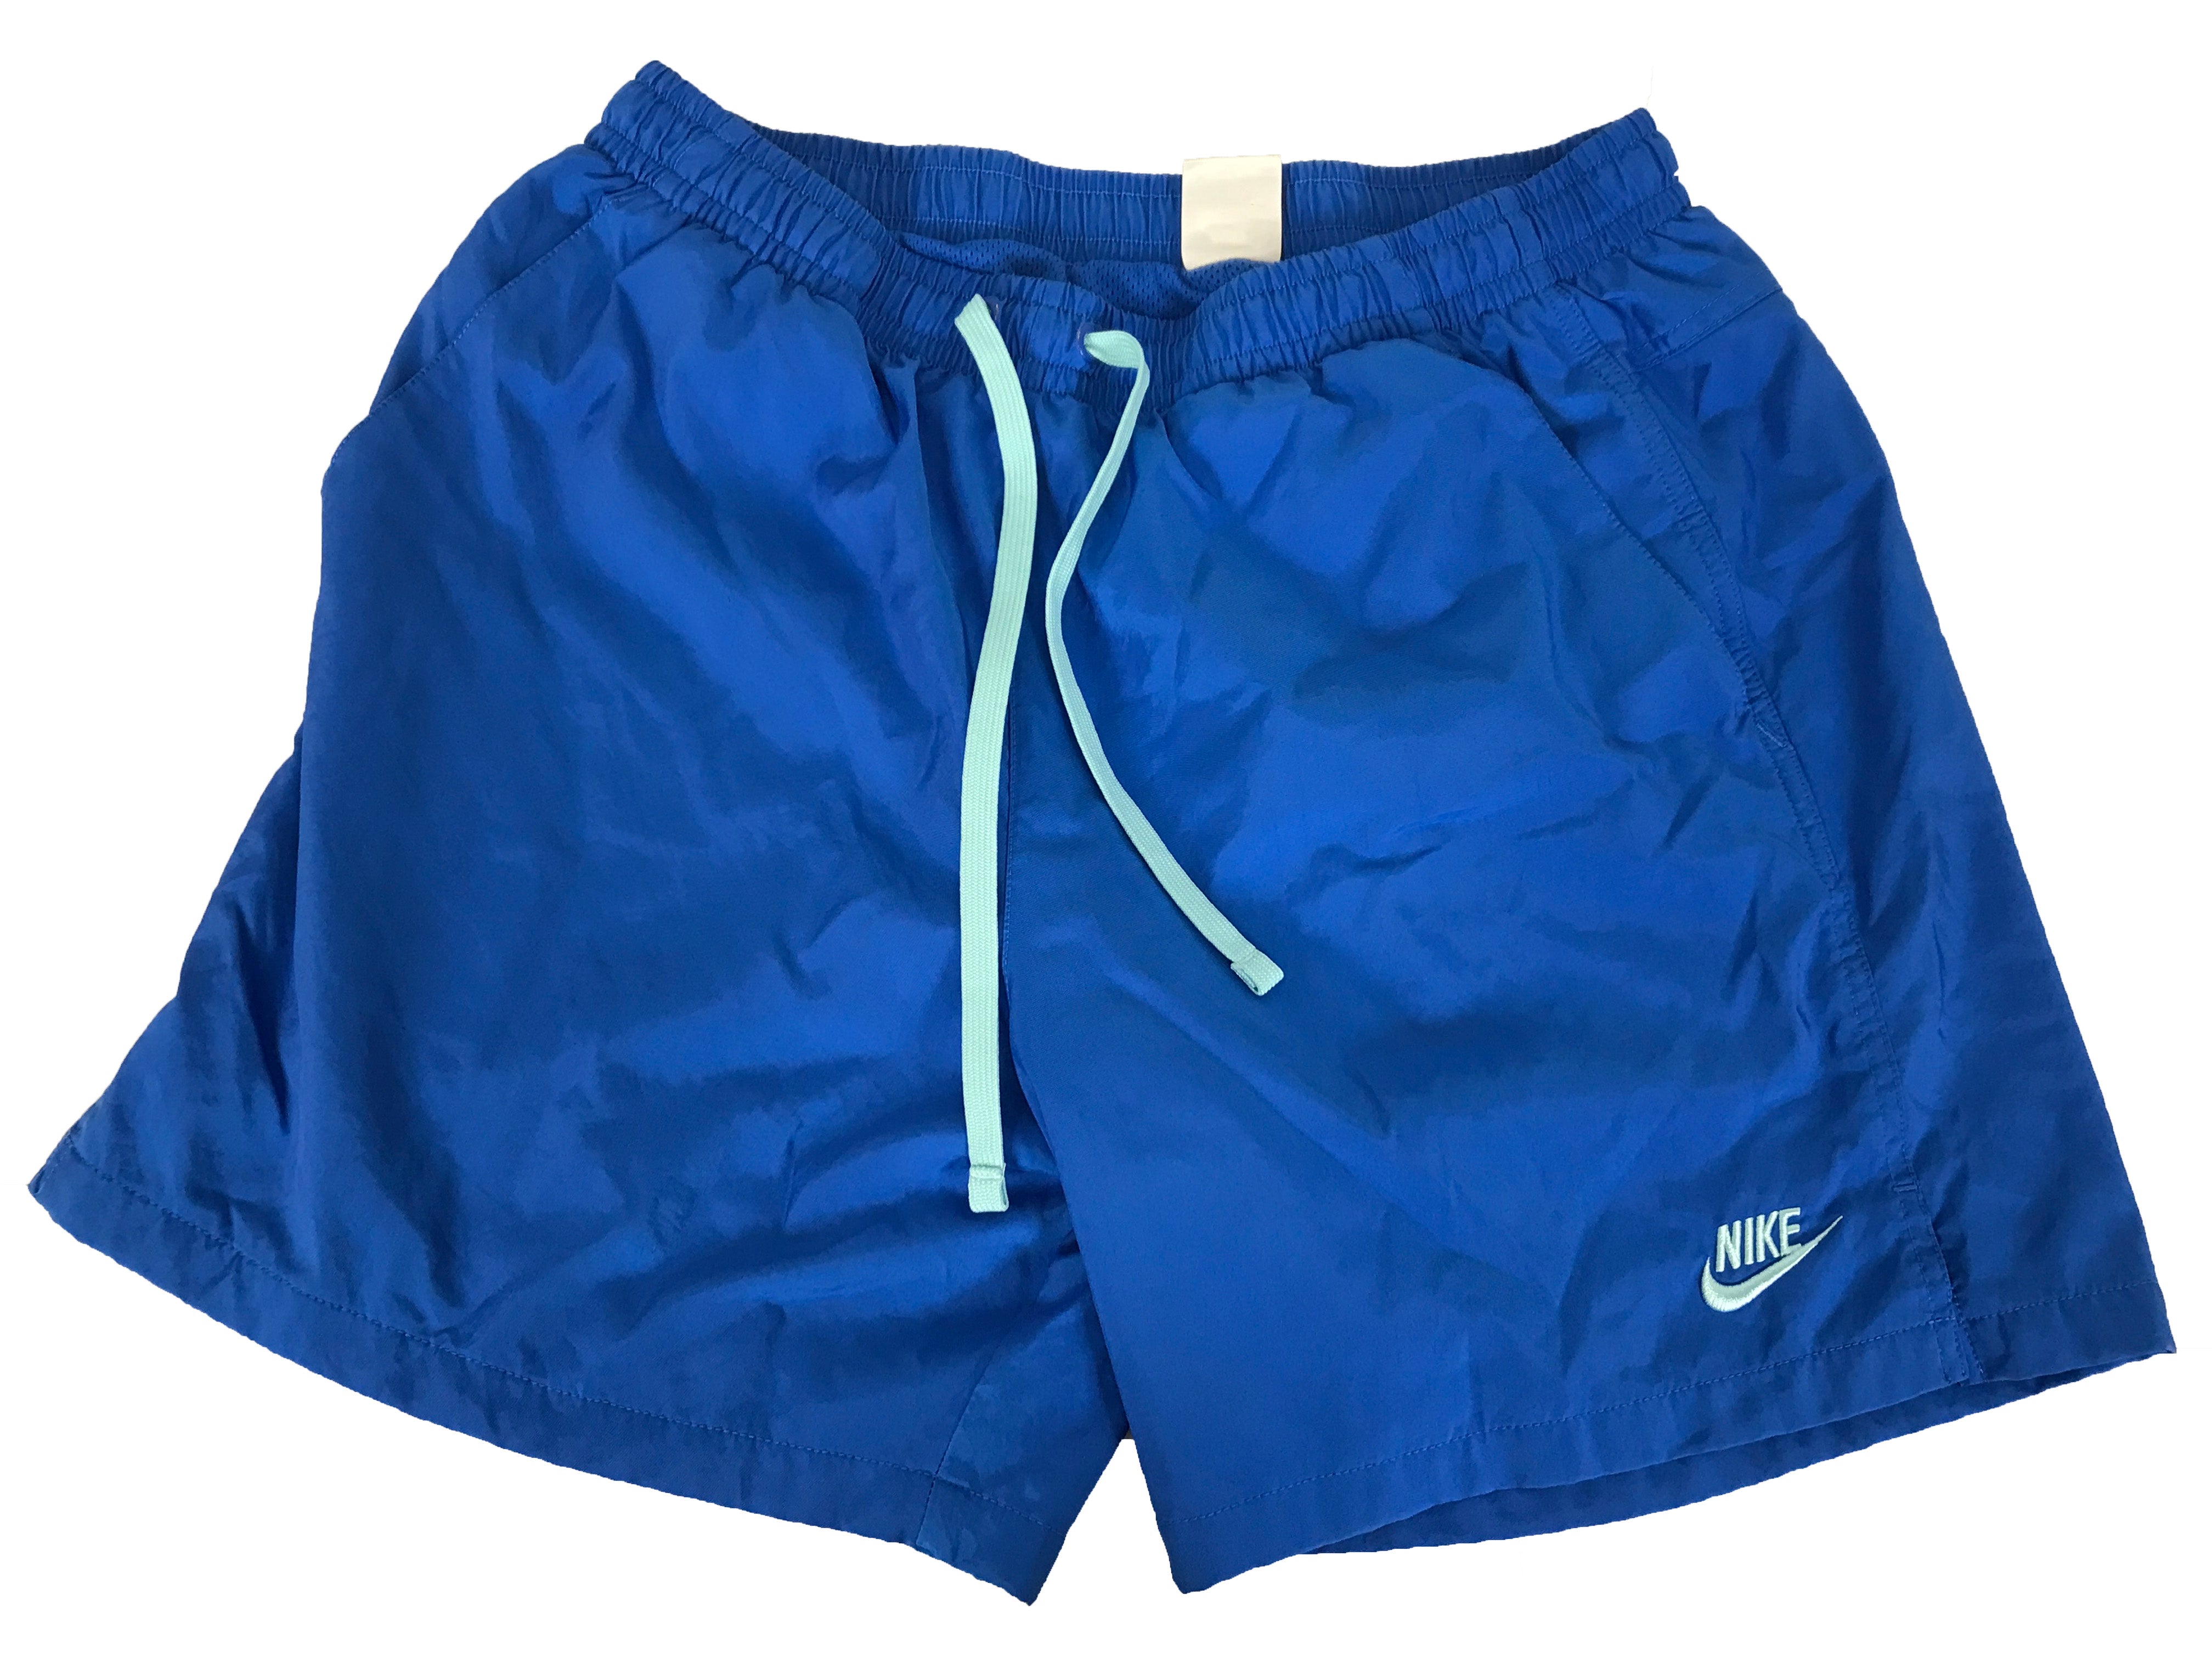 Nike Blue Shorts Men's Size L